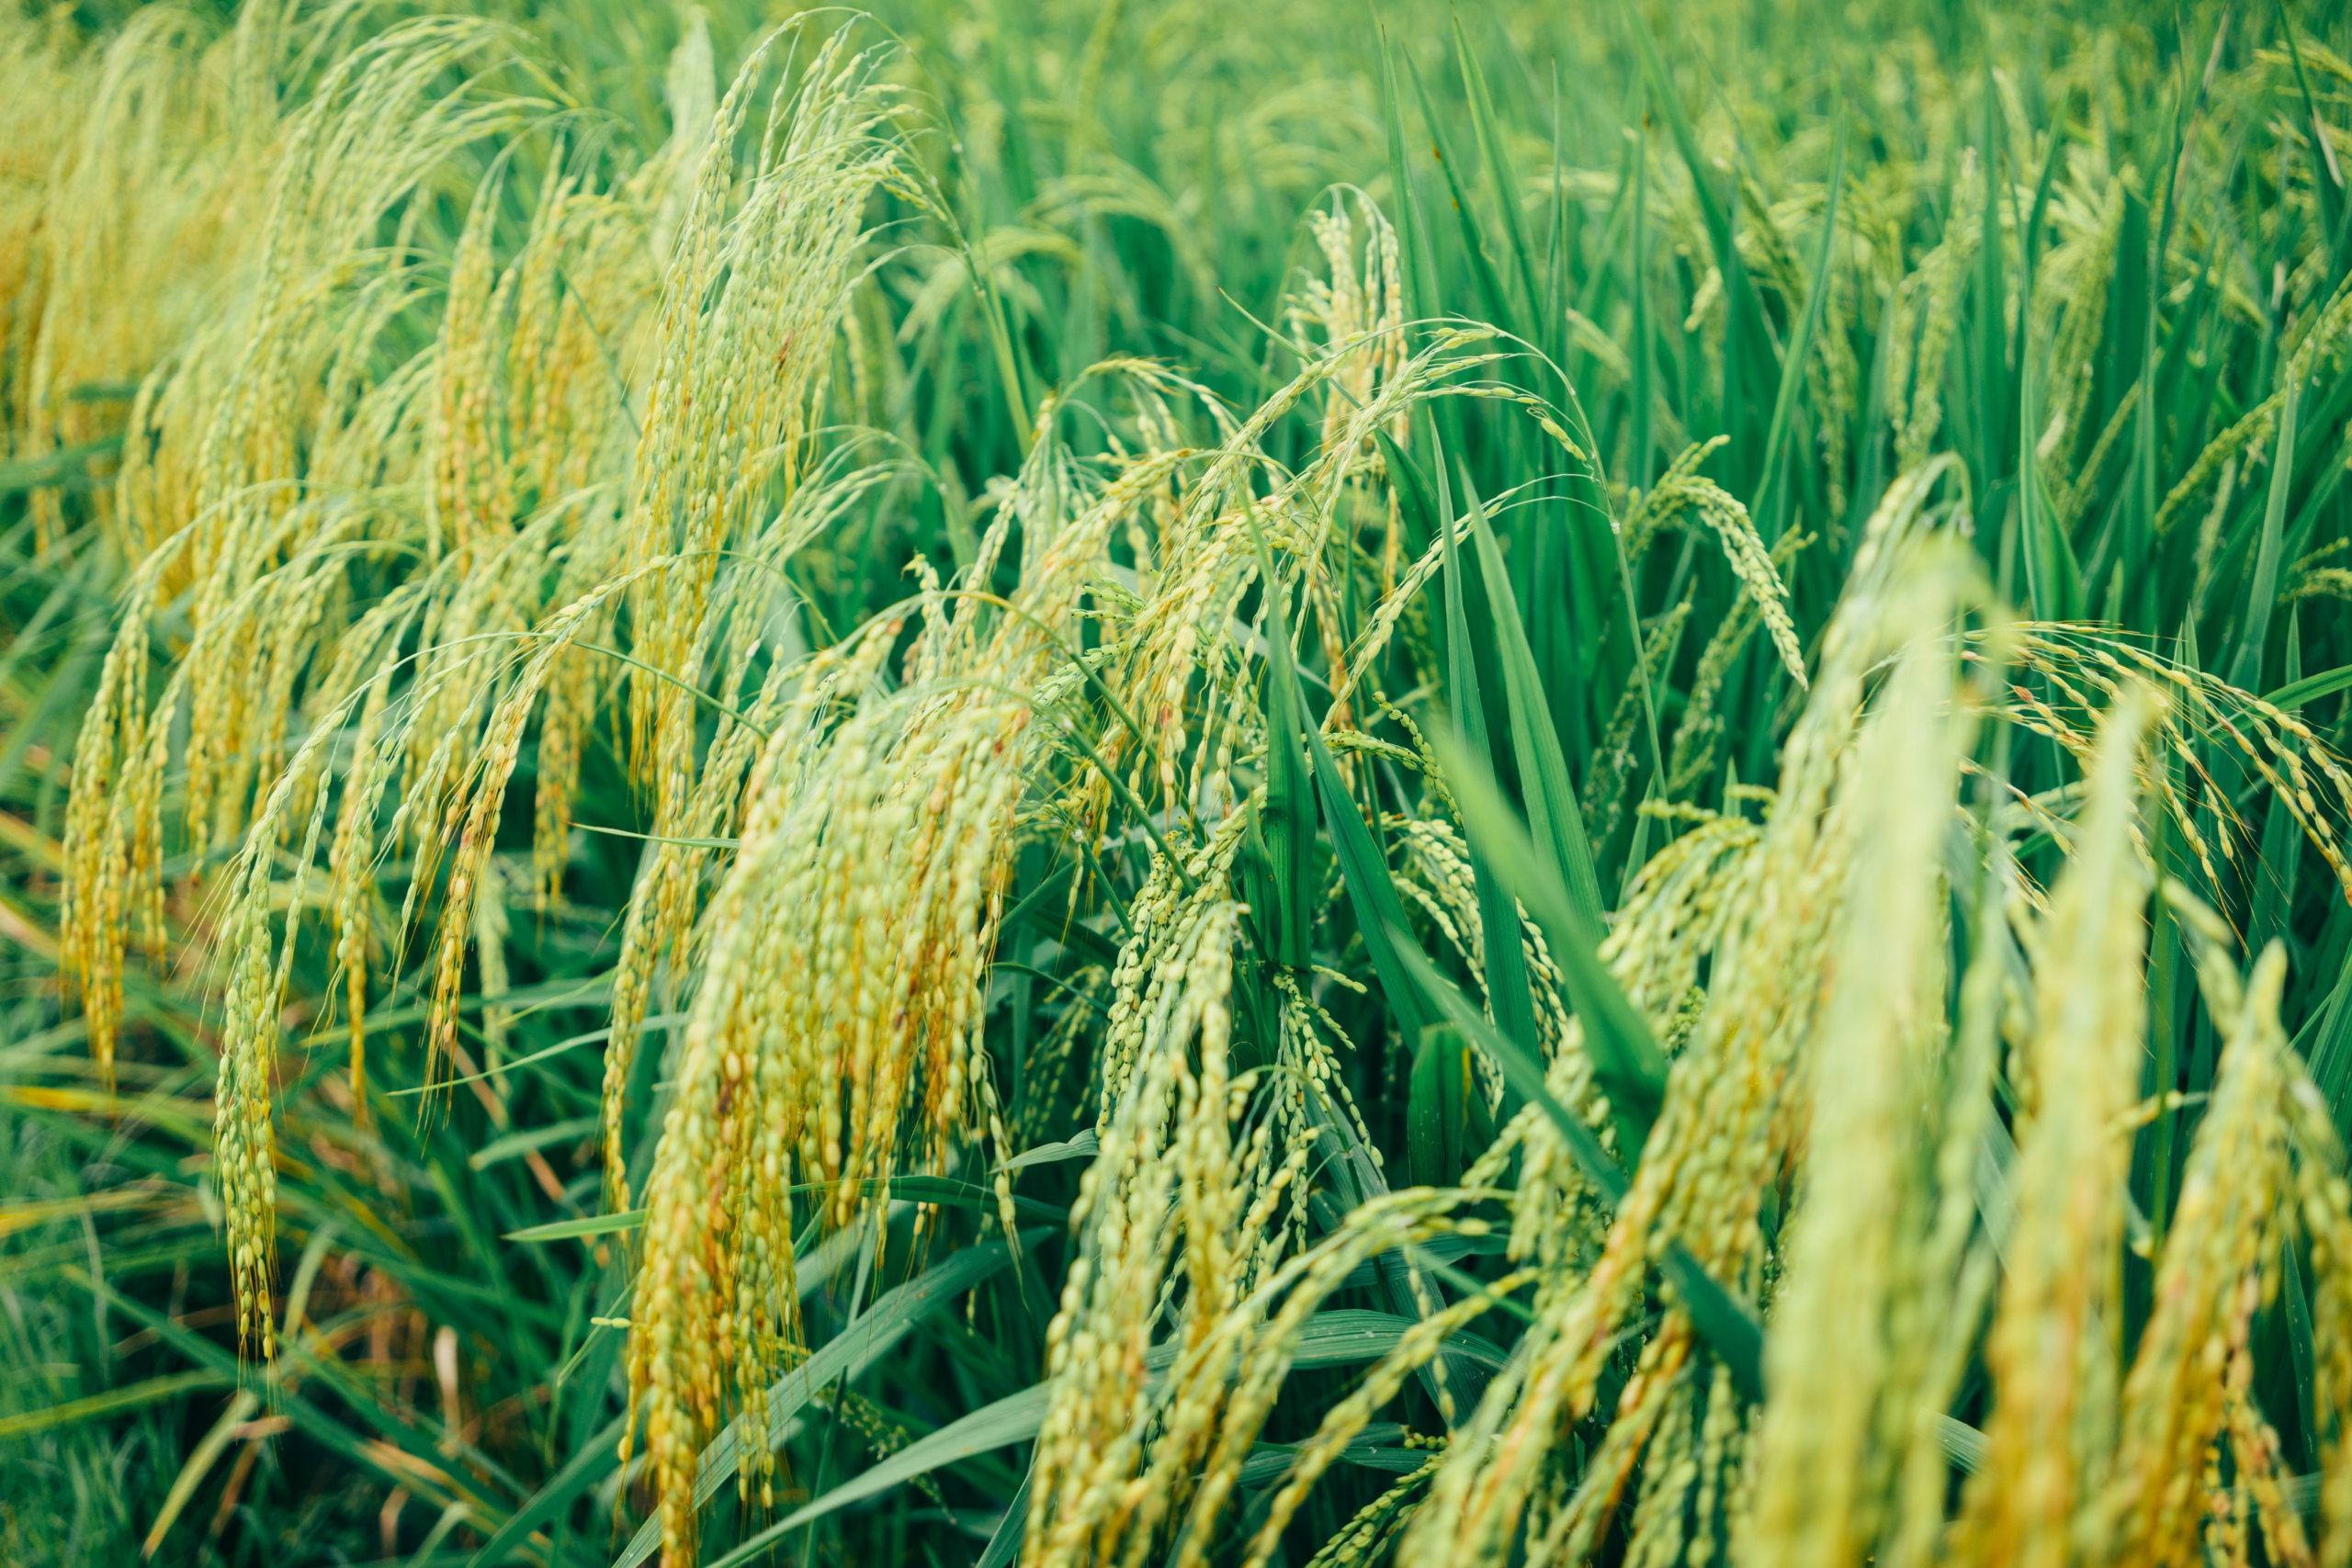 El Niños grepp om den globala ekonomin skärps, framför allt på rismarknaderna. Ris är viktig stapelvara för många länder i framförallt Asien och Afrika. Priset känner redan av bördan klimatförändringen i form av livsmedelsinflation. En stärkande och långvarig El Niño kan få betydande konsekvenser för de globala livsmedelsmarknaderna.